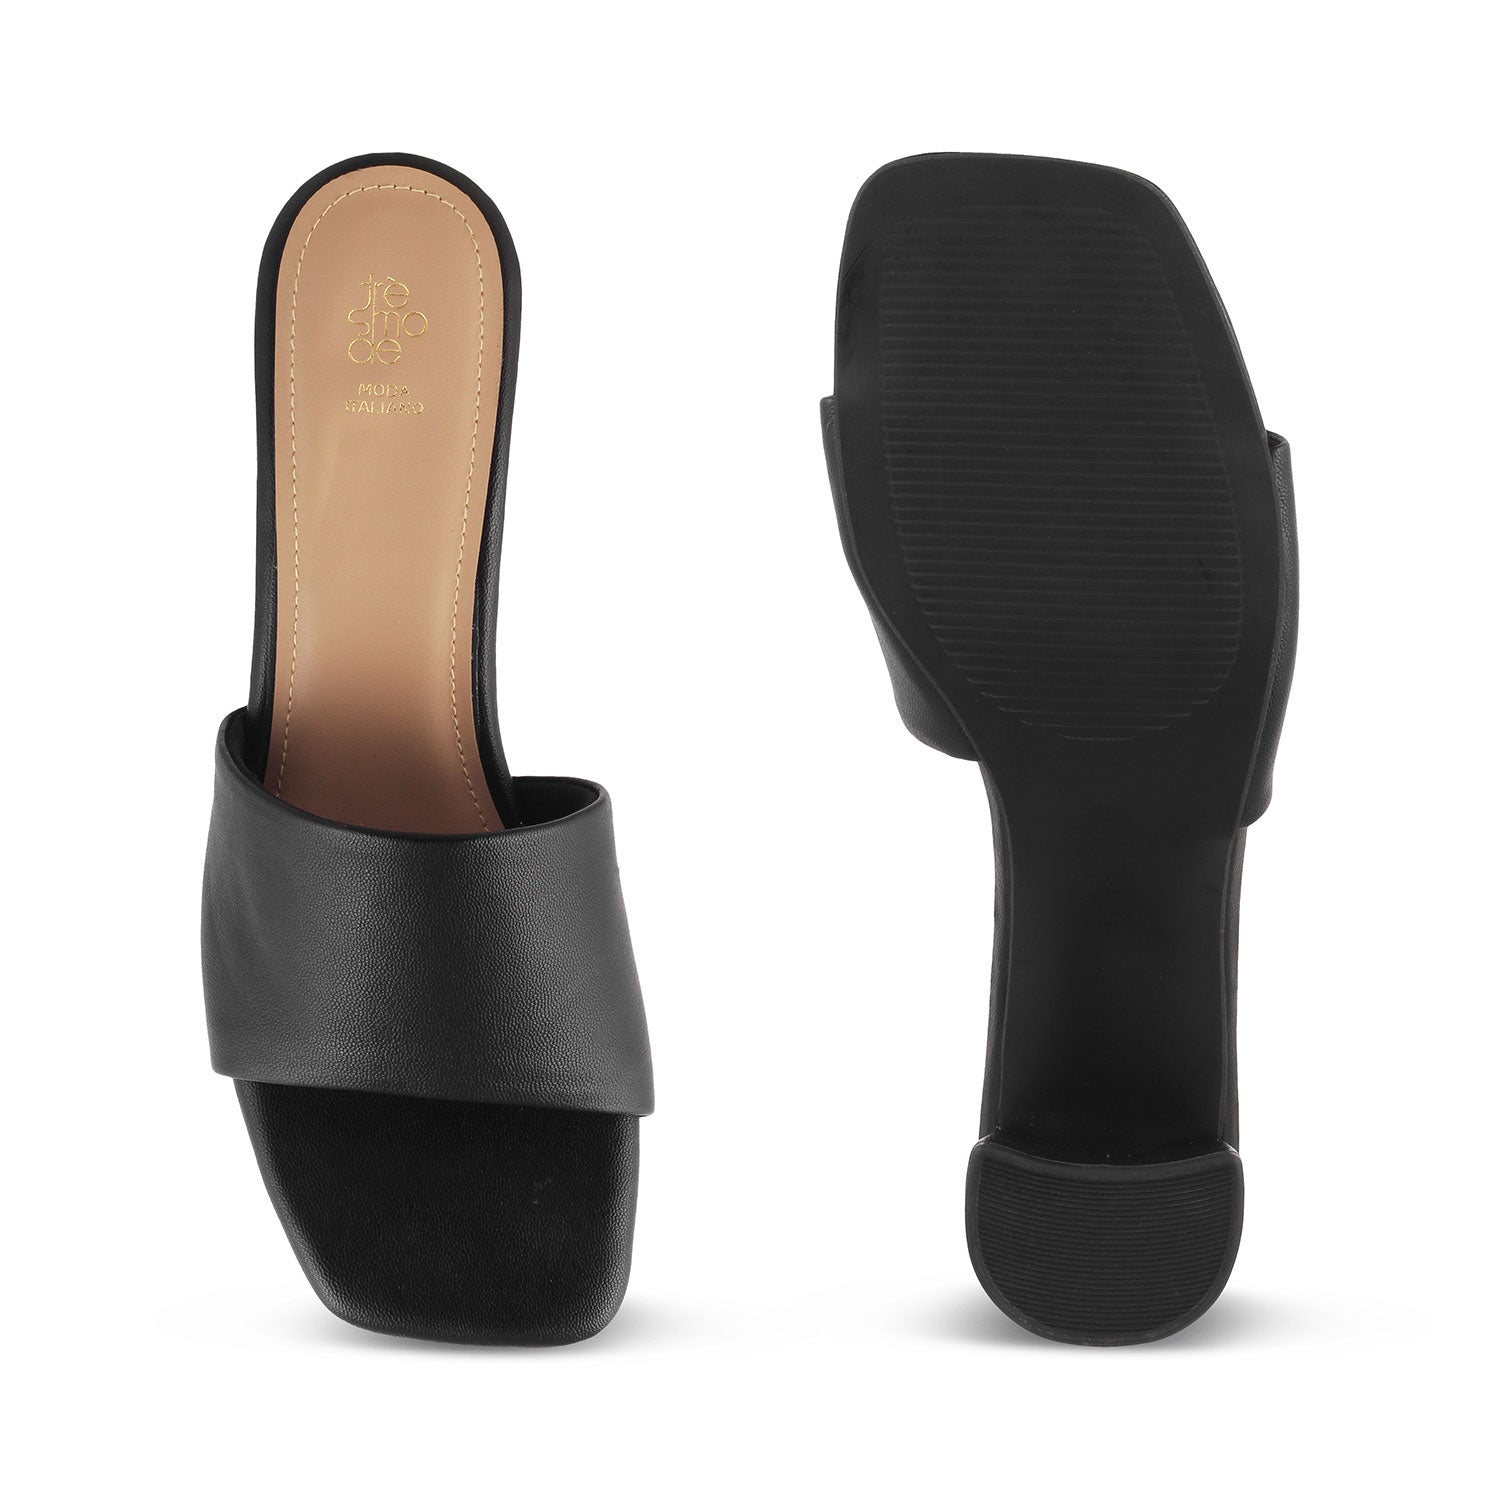 The Bariz Black Women's Casual Block Heel Sandals Tresmode - Tresmode